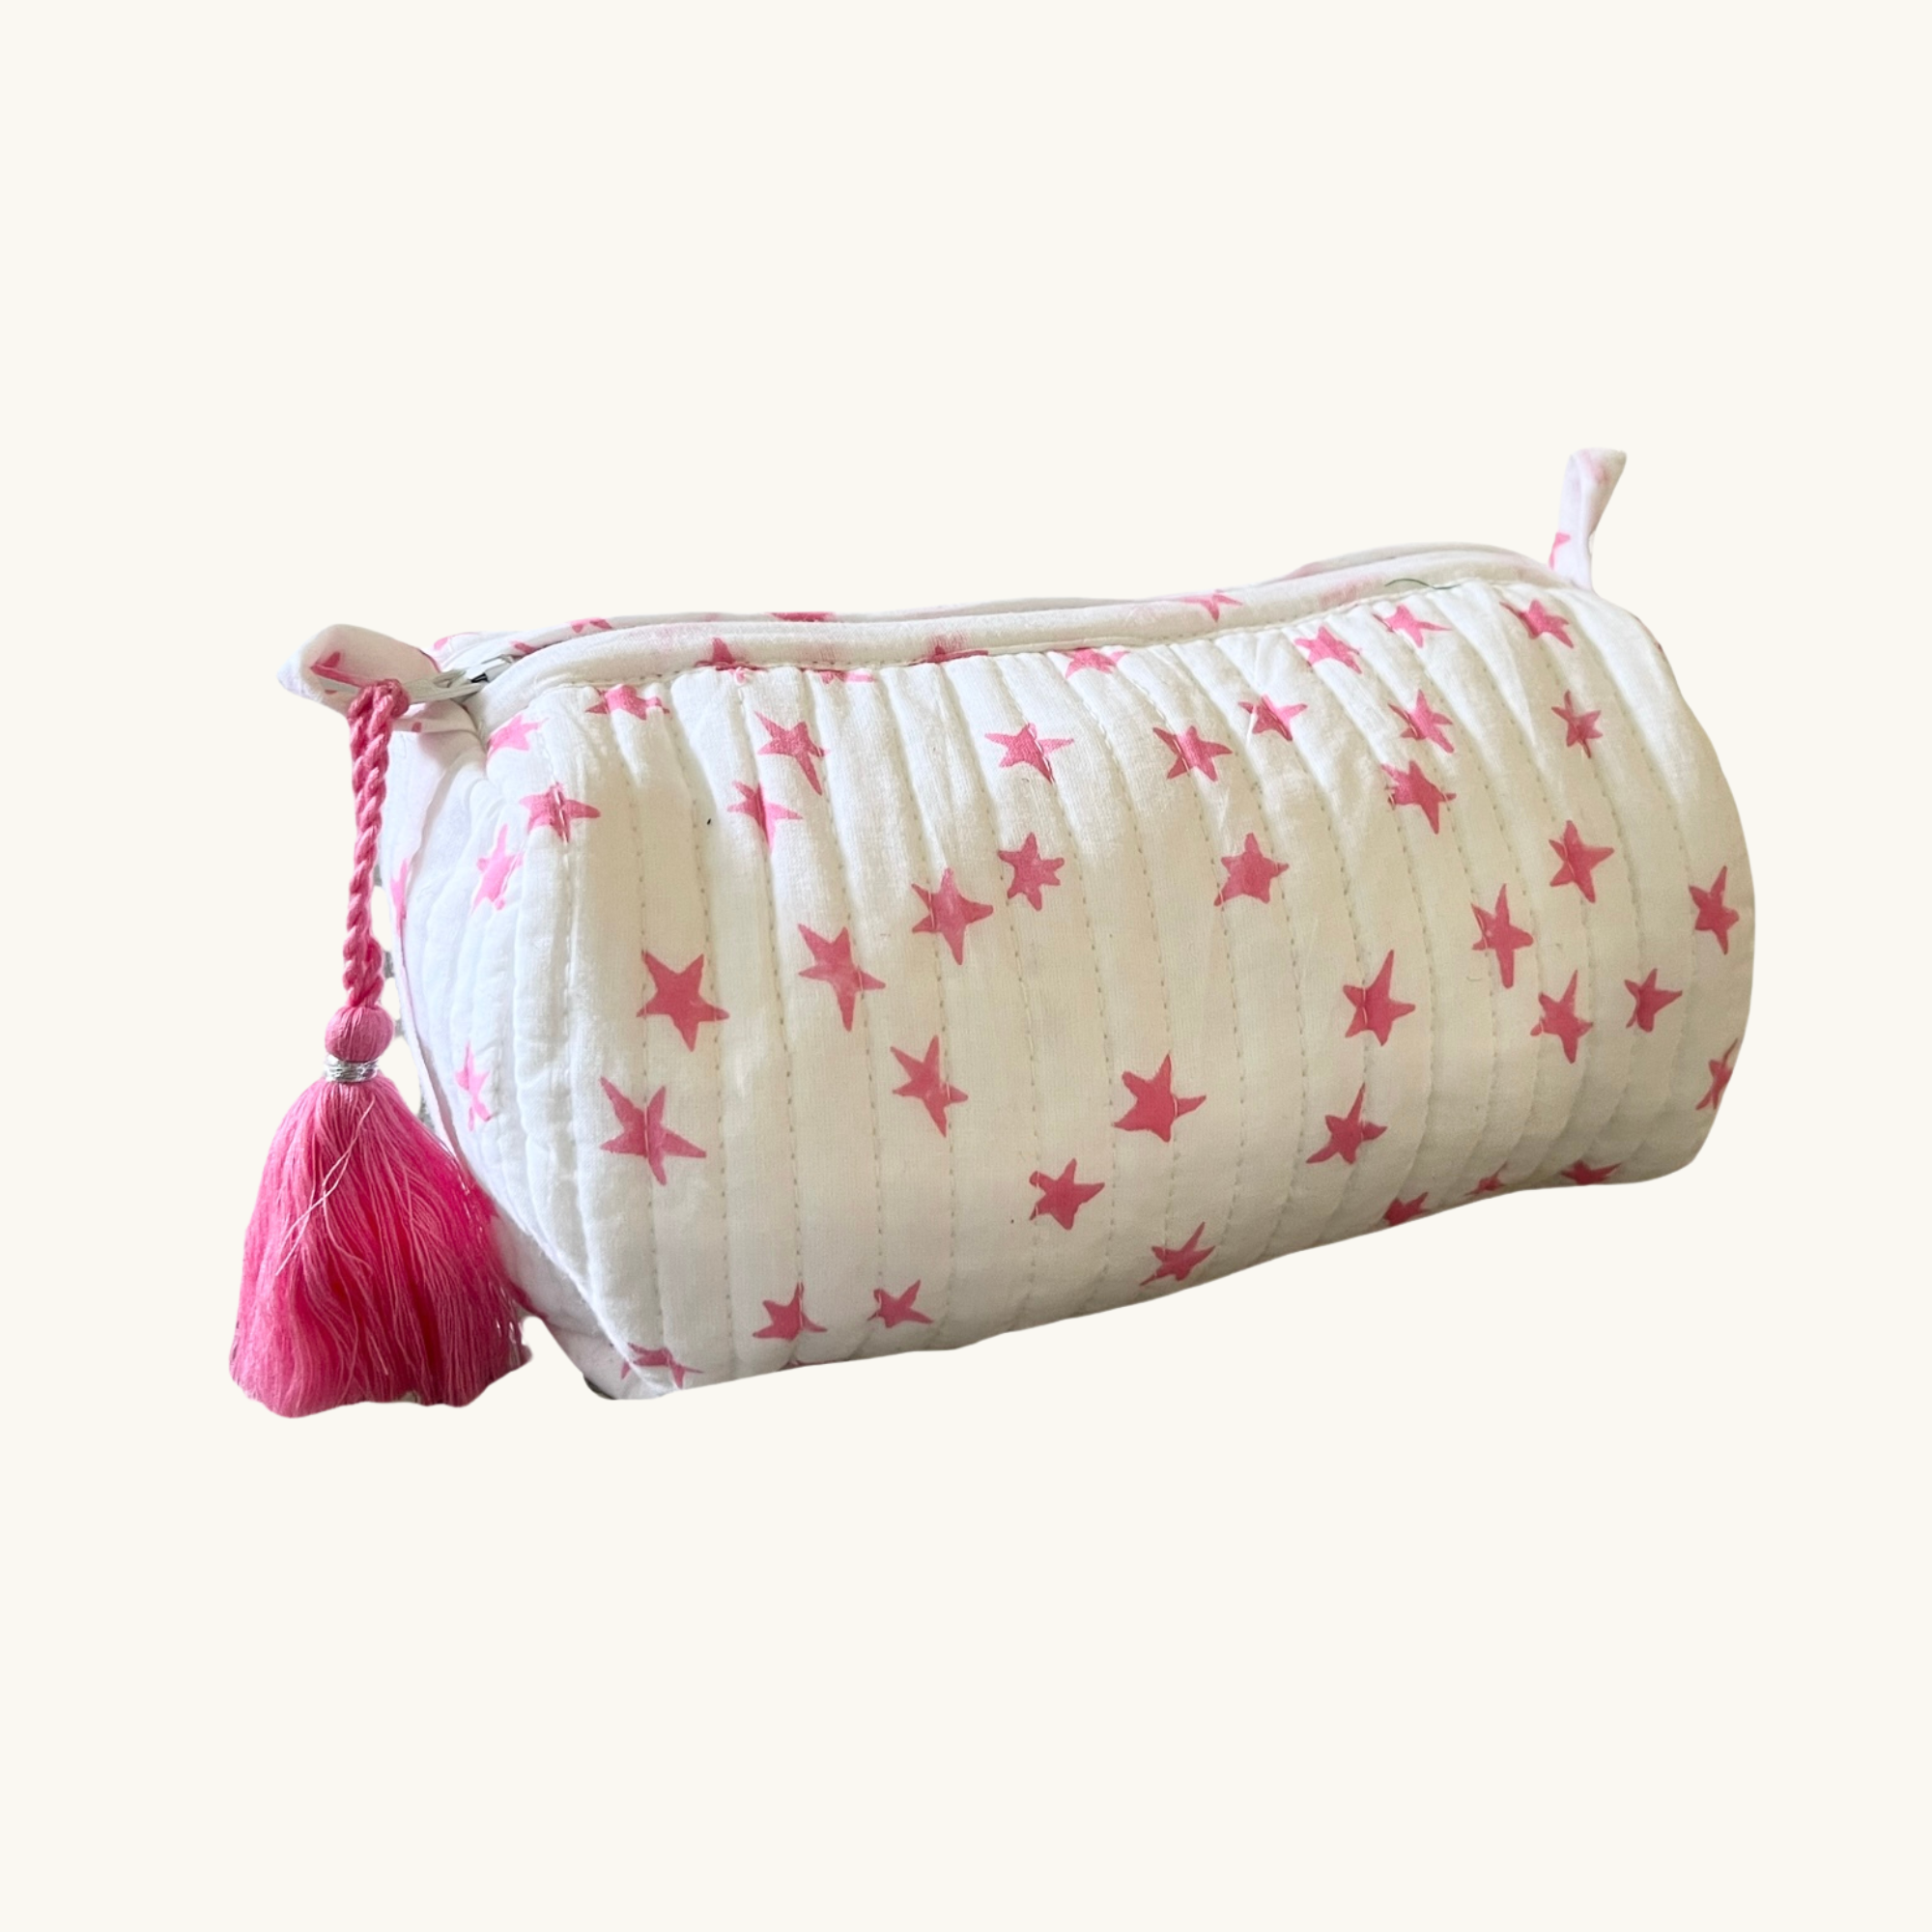 Pink Star Handblocked Wash Bag